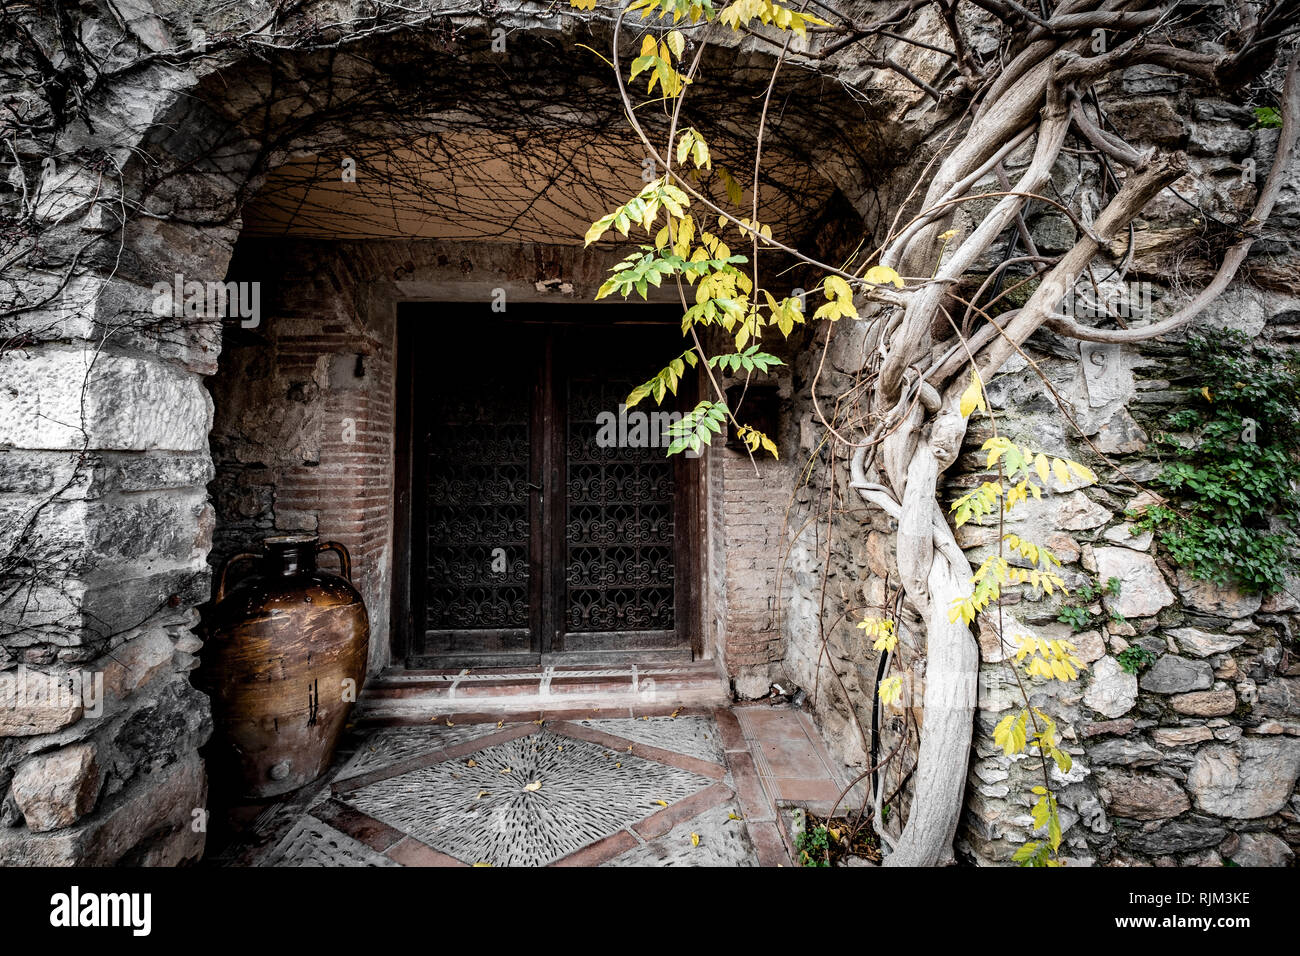 Rustikale Architektur im Dorf Castelnou, innerhalb der Liste der les plus beaux Städte von Frankreich Stockfoto